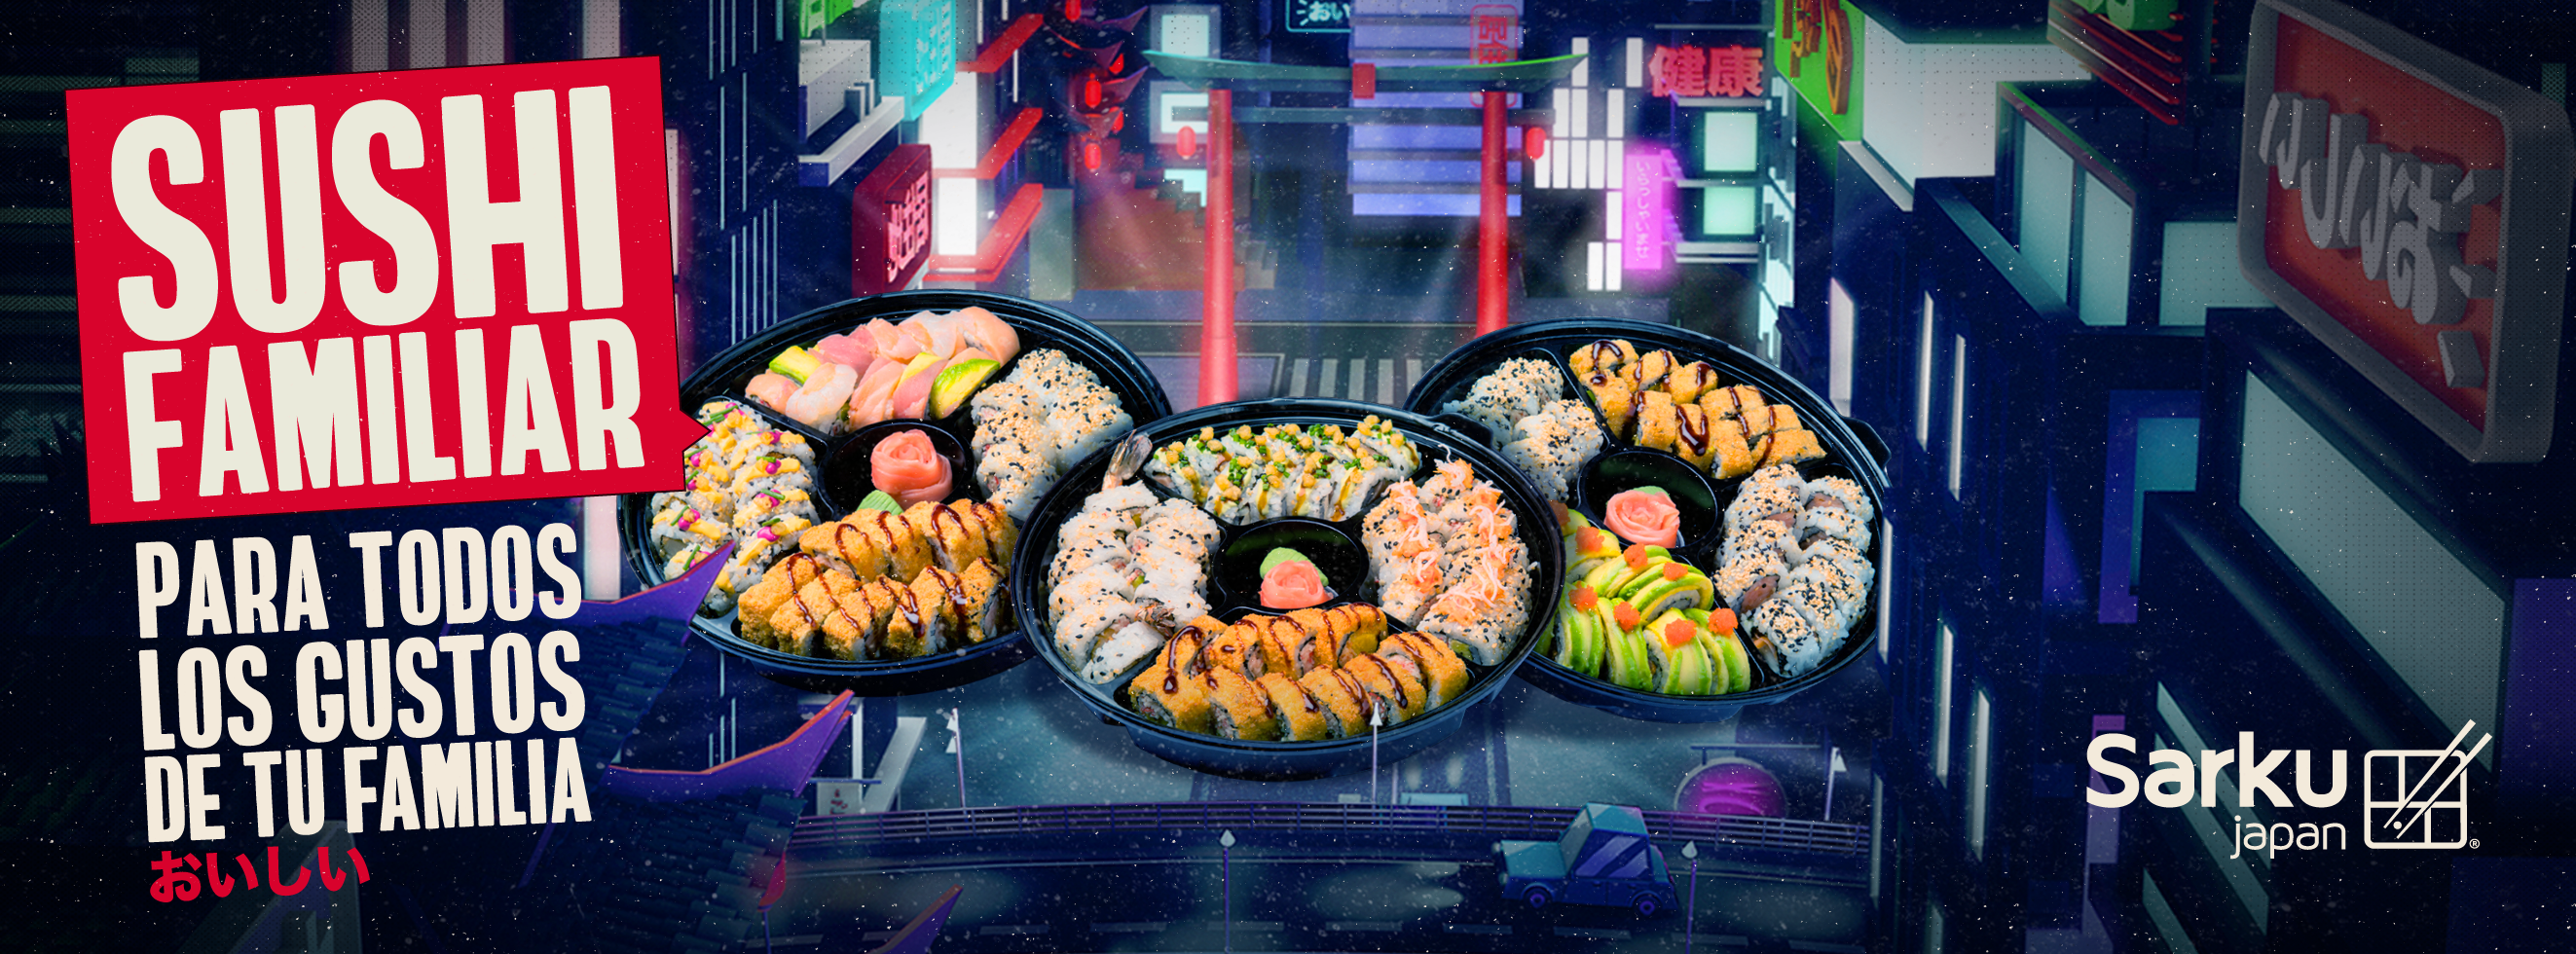 Sushi Familiar. Para todos los gustos de tu familia